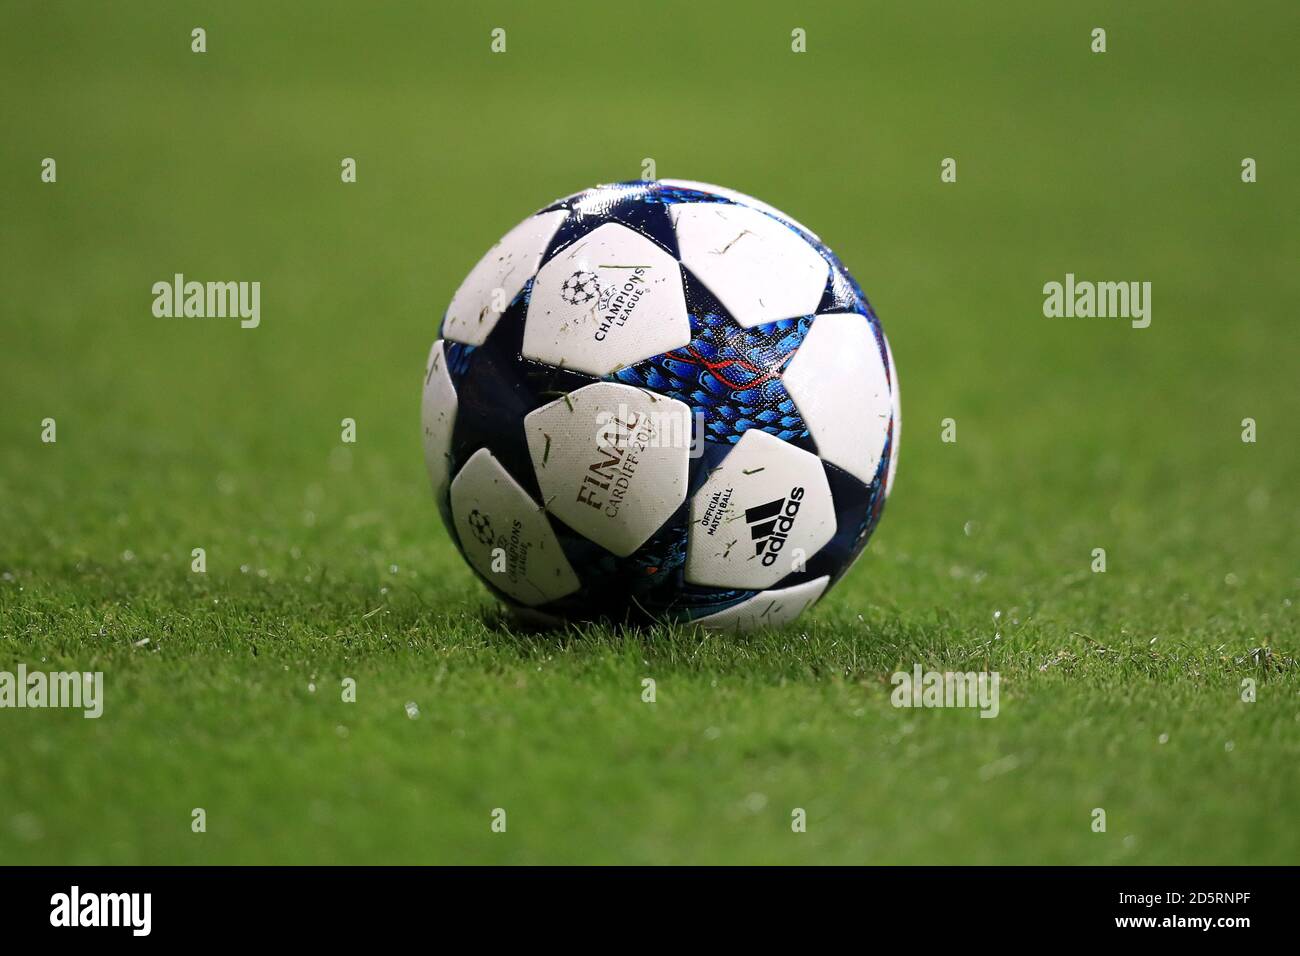 Adidas pelota e imágenes de alta resolución - Alamy